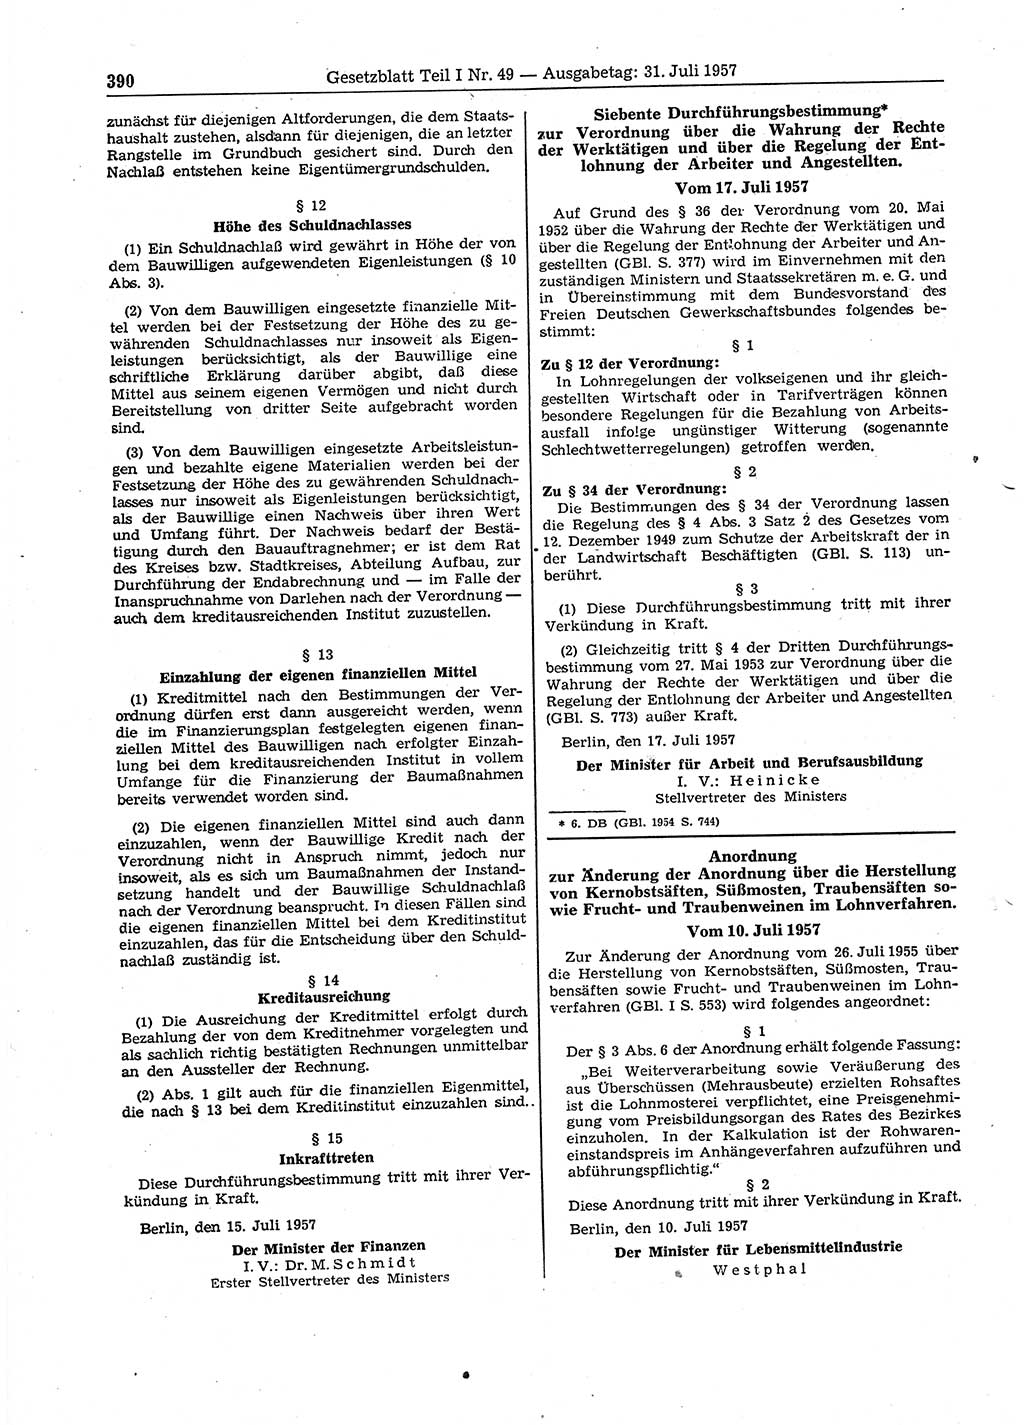 Gesetzblatt (GBl.) der Deutschen Demokratischen Republik (DDR) Teil Ⅰ 1957, Seite 390 (GBl. DDR Ⅰ 1957, S. 390)